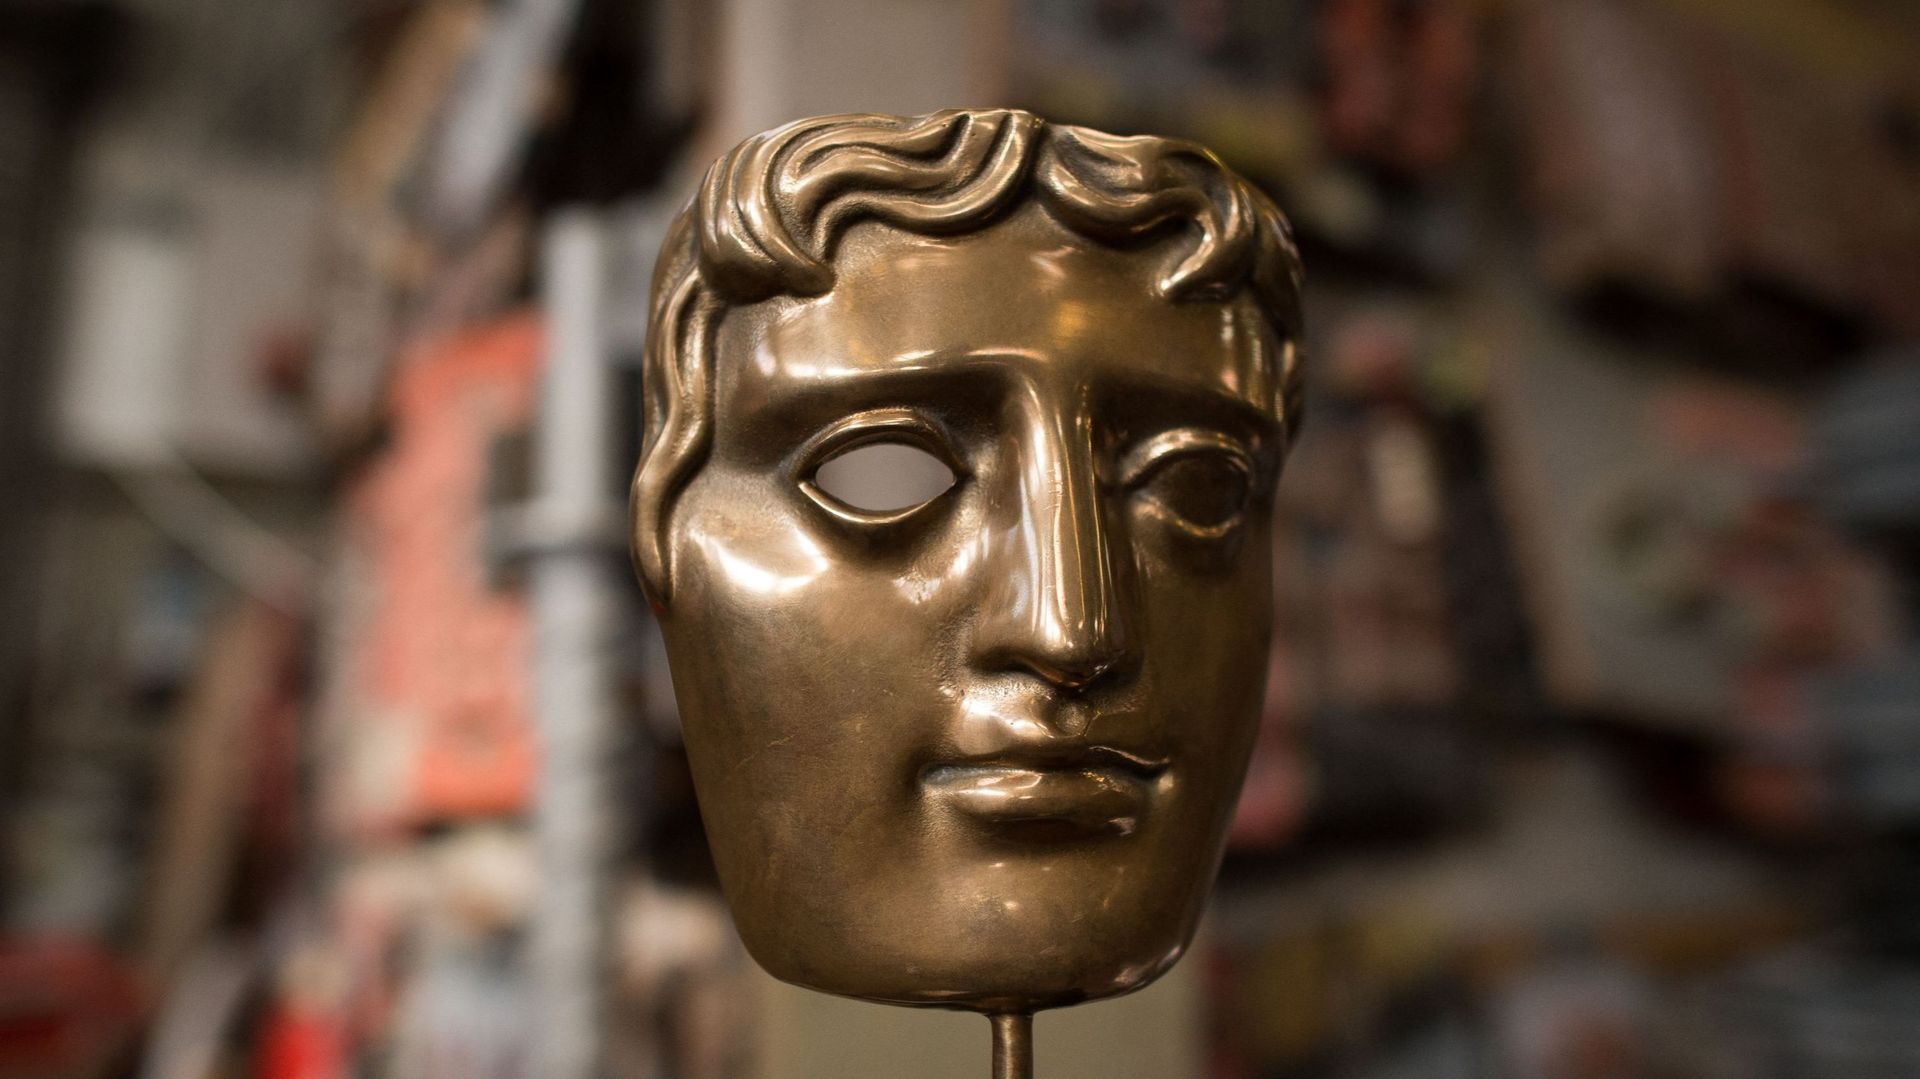 Masque antique des British Academy of Film and Television Awards, réalisé par le sculpteur américain Mitzi Cunliffe.